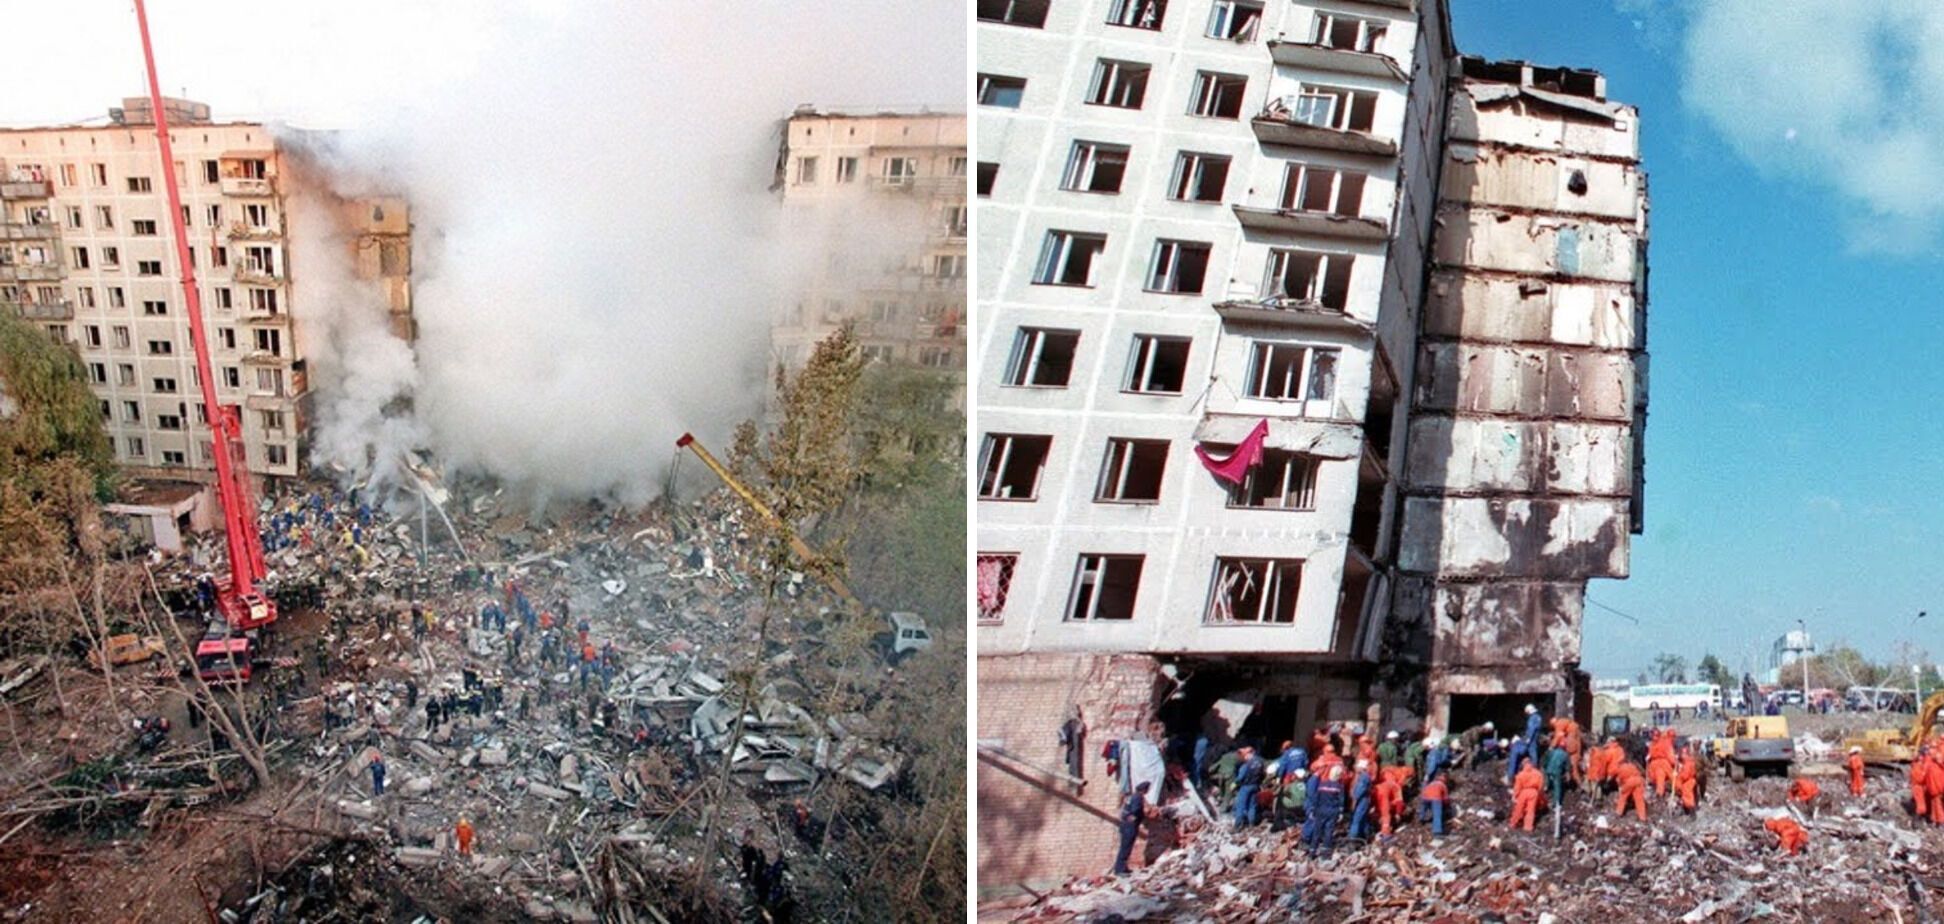 У вересні 1999 року в Росії сталася серія кривавих терактів